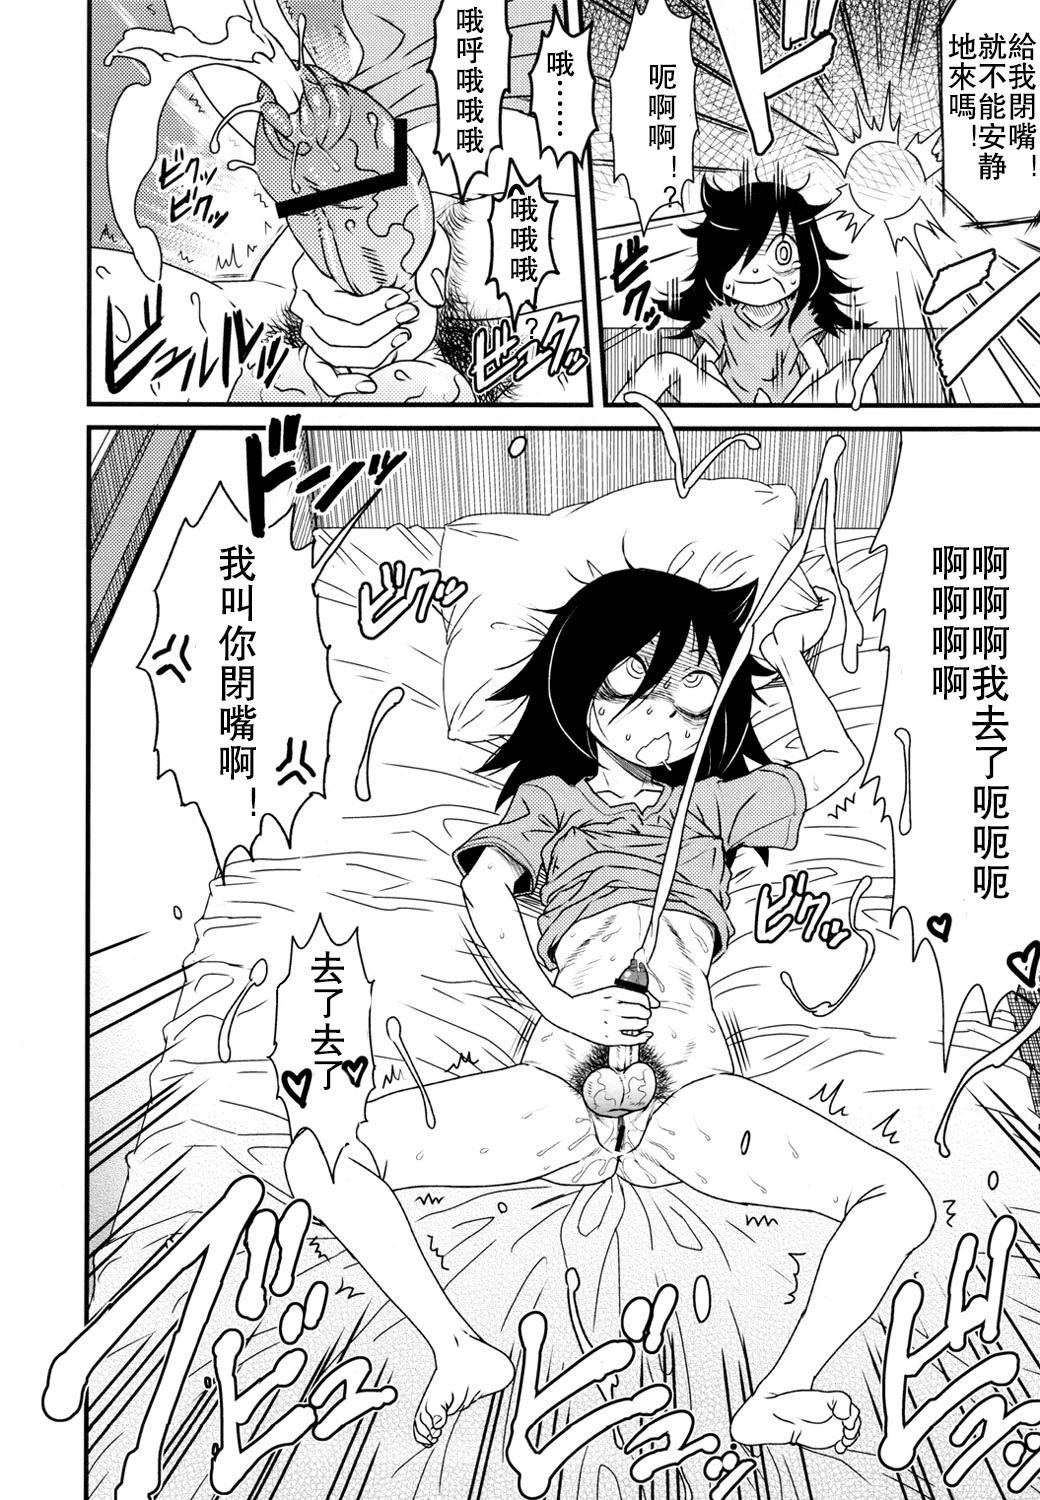 Footfetish Watashi ga Sex Dekinai no wa dou Kangaete mo Koitsu ga Warui! - Its not my fault that im not popular Huge Dick - Page 6